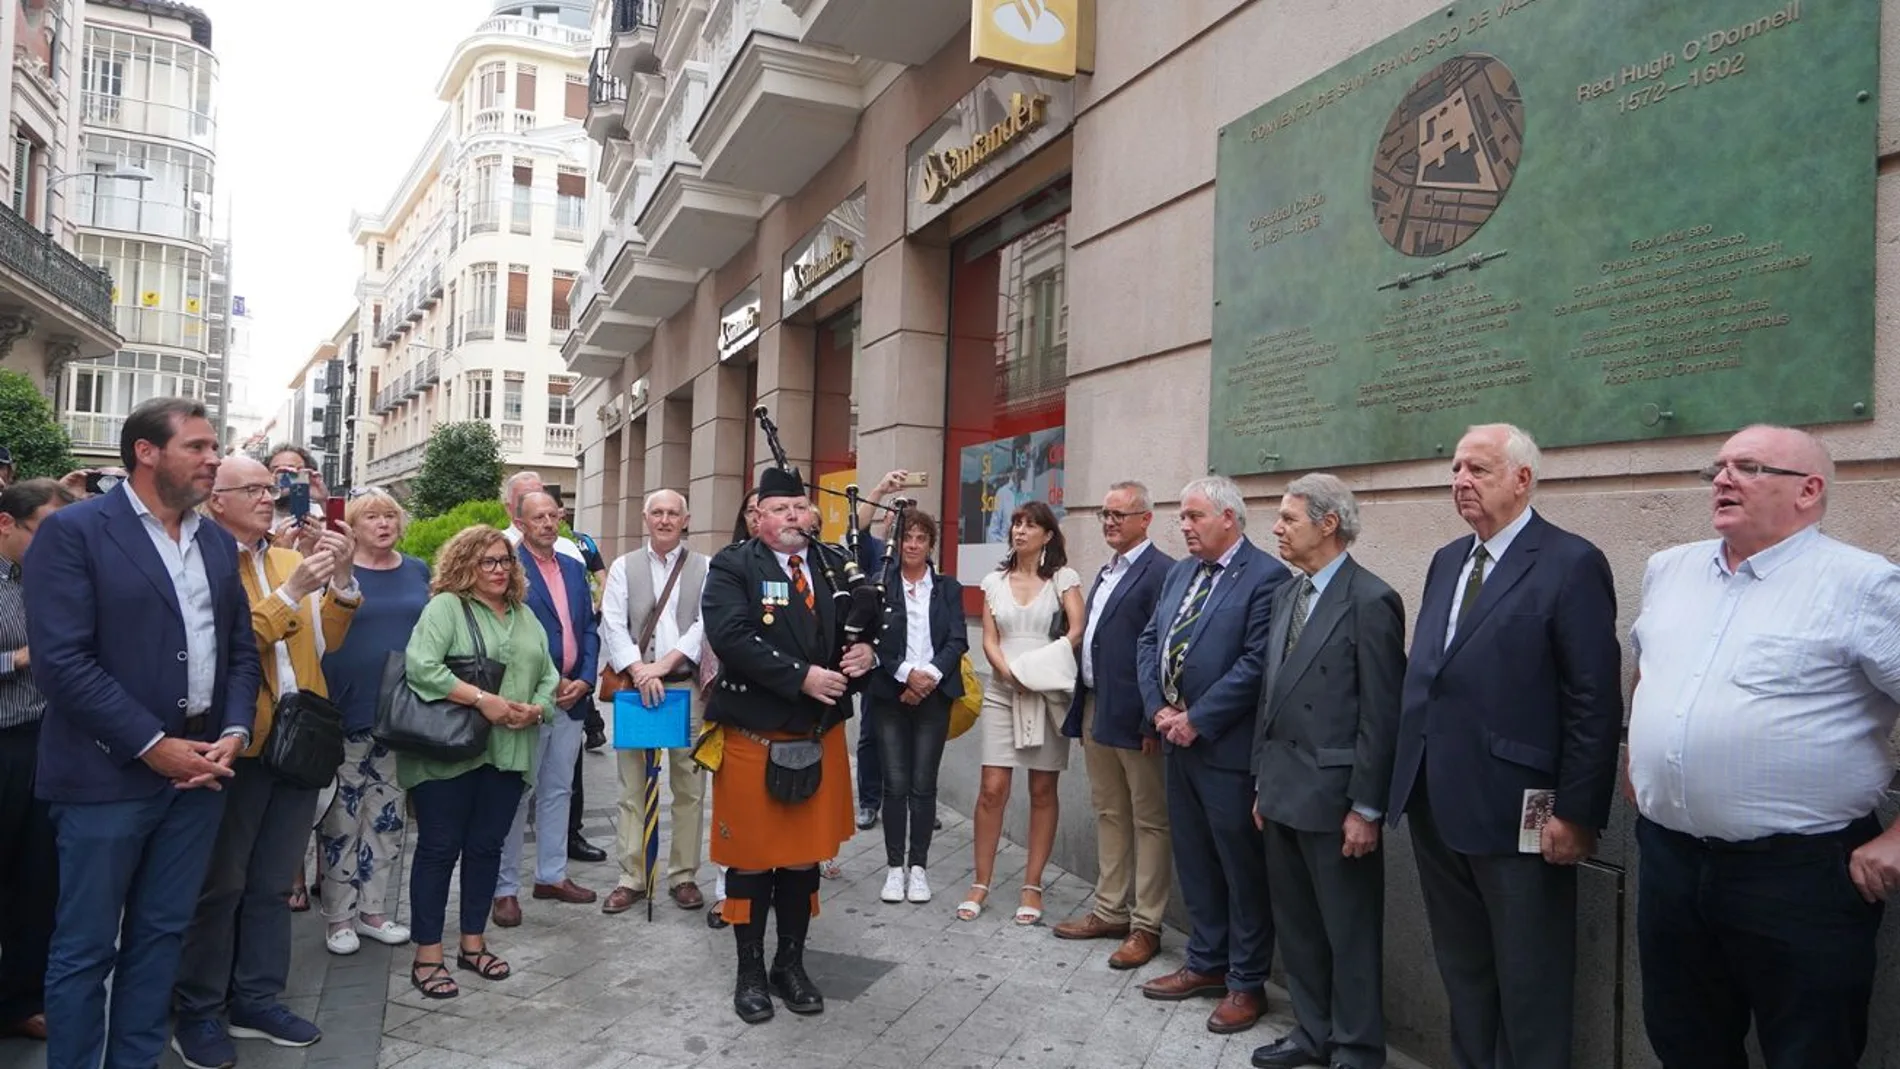 El Ayuntamiento de Valladolid conmemora con una placa el lugar donde estuvieron enterrados el descubridor Cristóbal Colón y el héroe irlandés Hugh O' Donnell